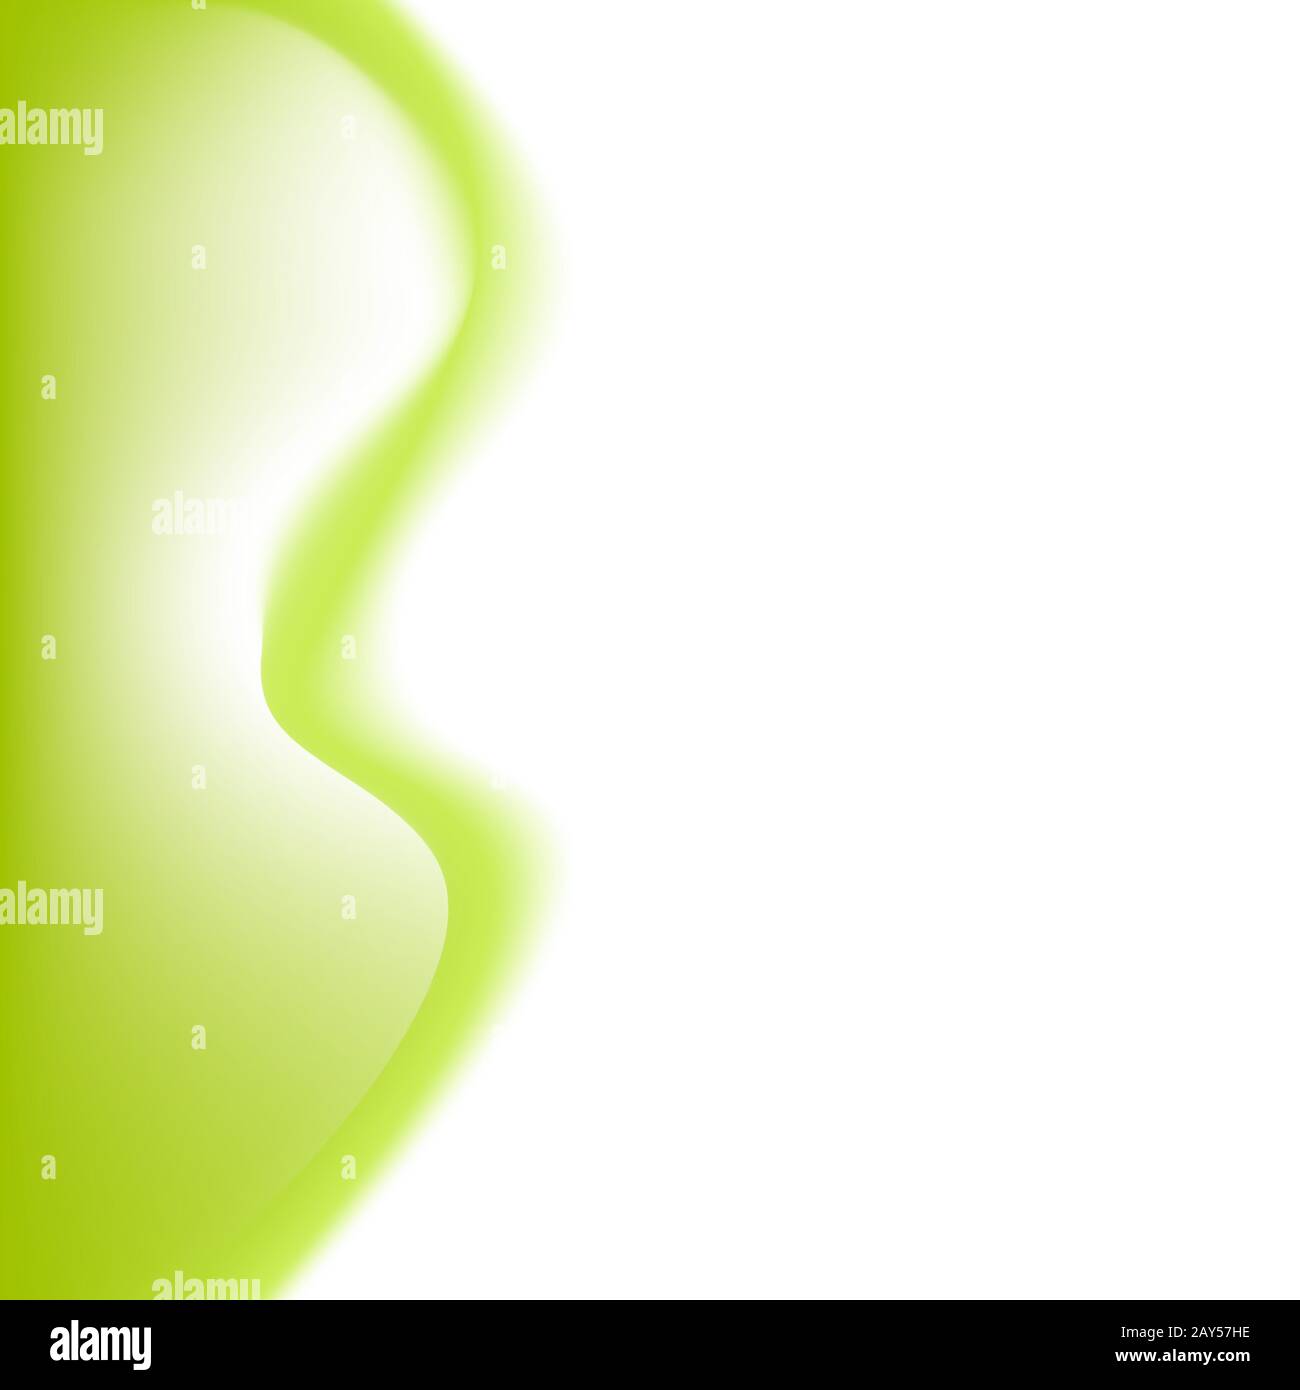 Linee ondulate verdi astratte. Sfondo dell'onda verde vettoriale. Per brochure, disegno di Web site Illustrazione Vettoriale